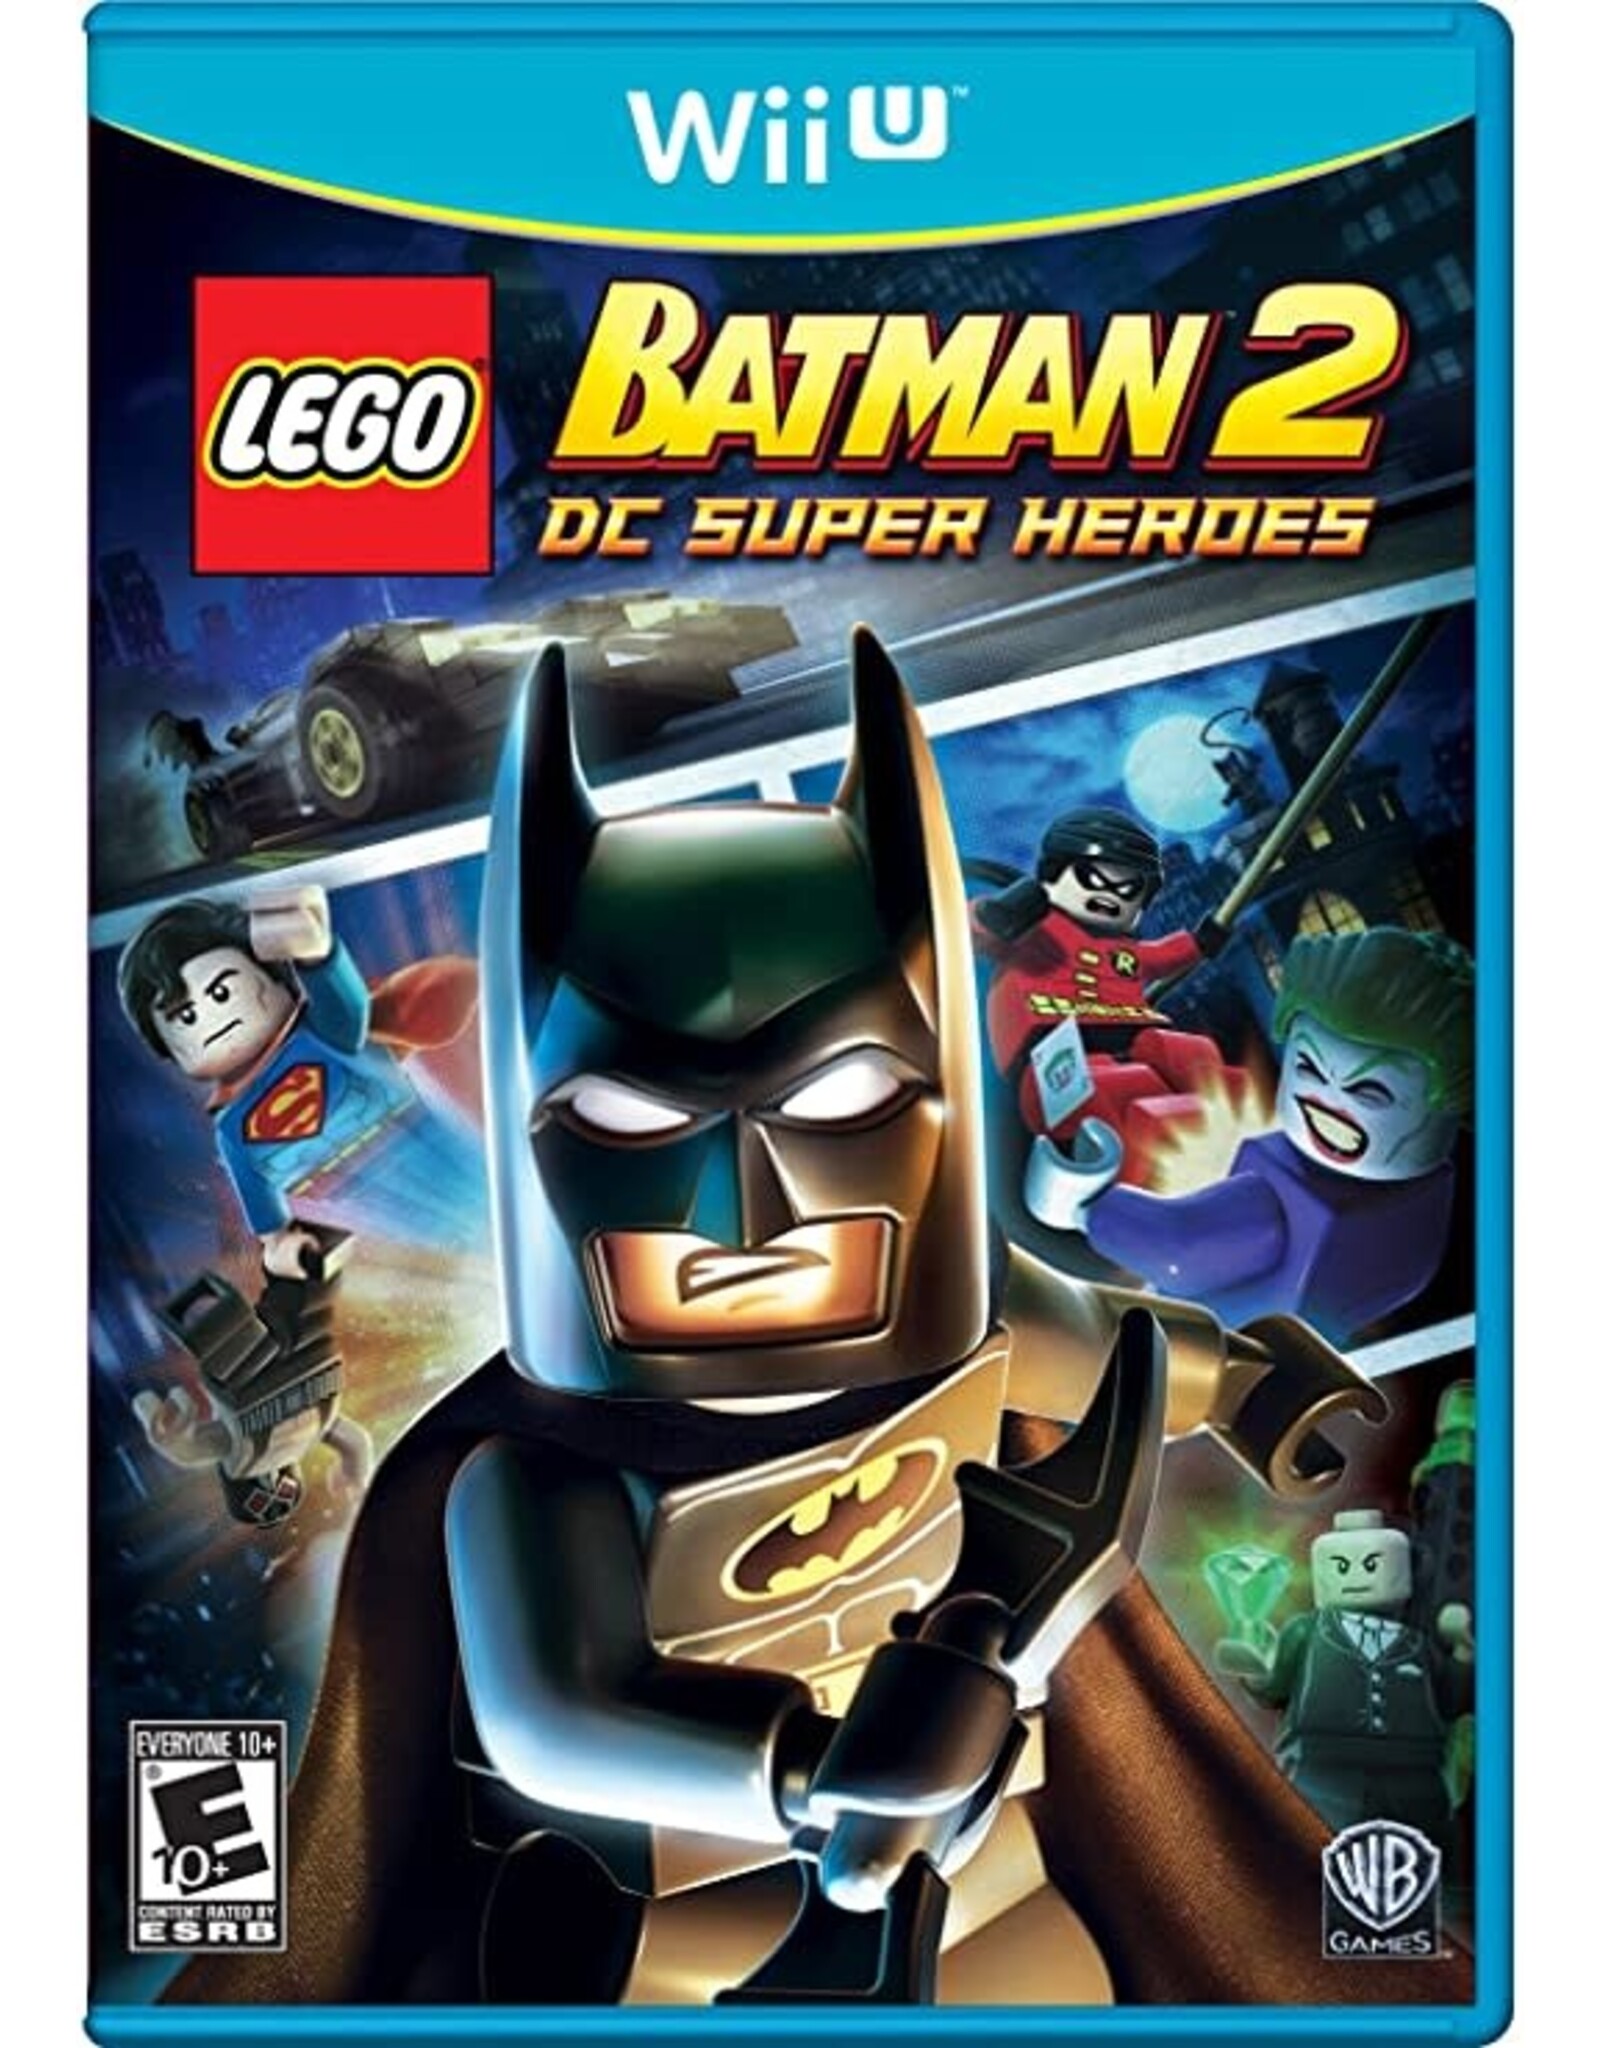 Wii U LEGO Batman 2 (No Manual)